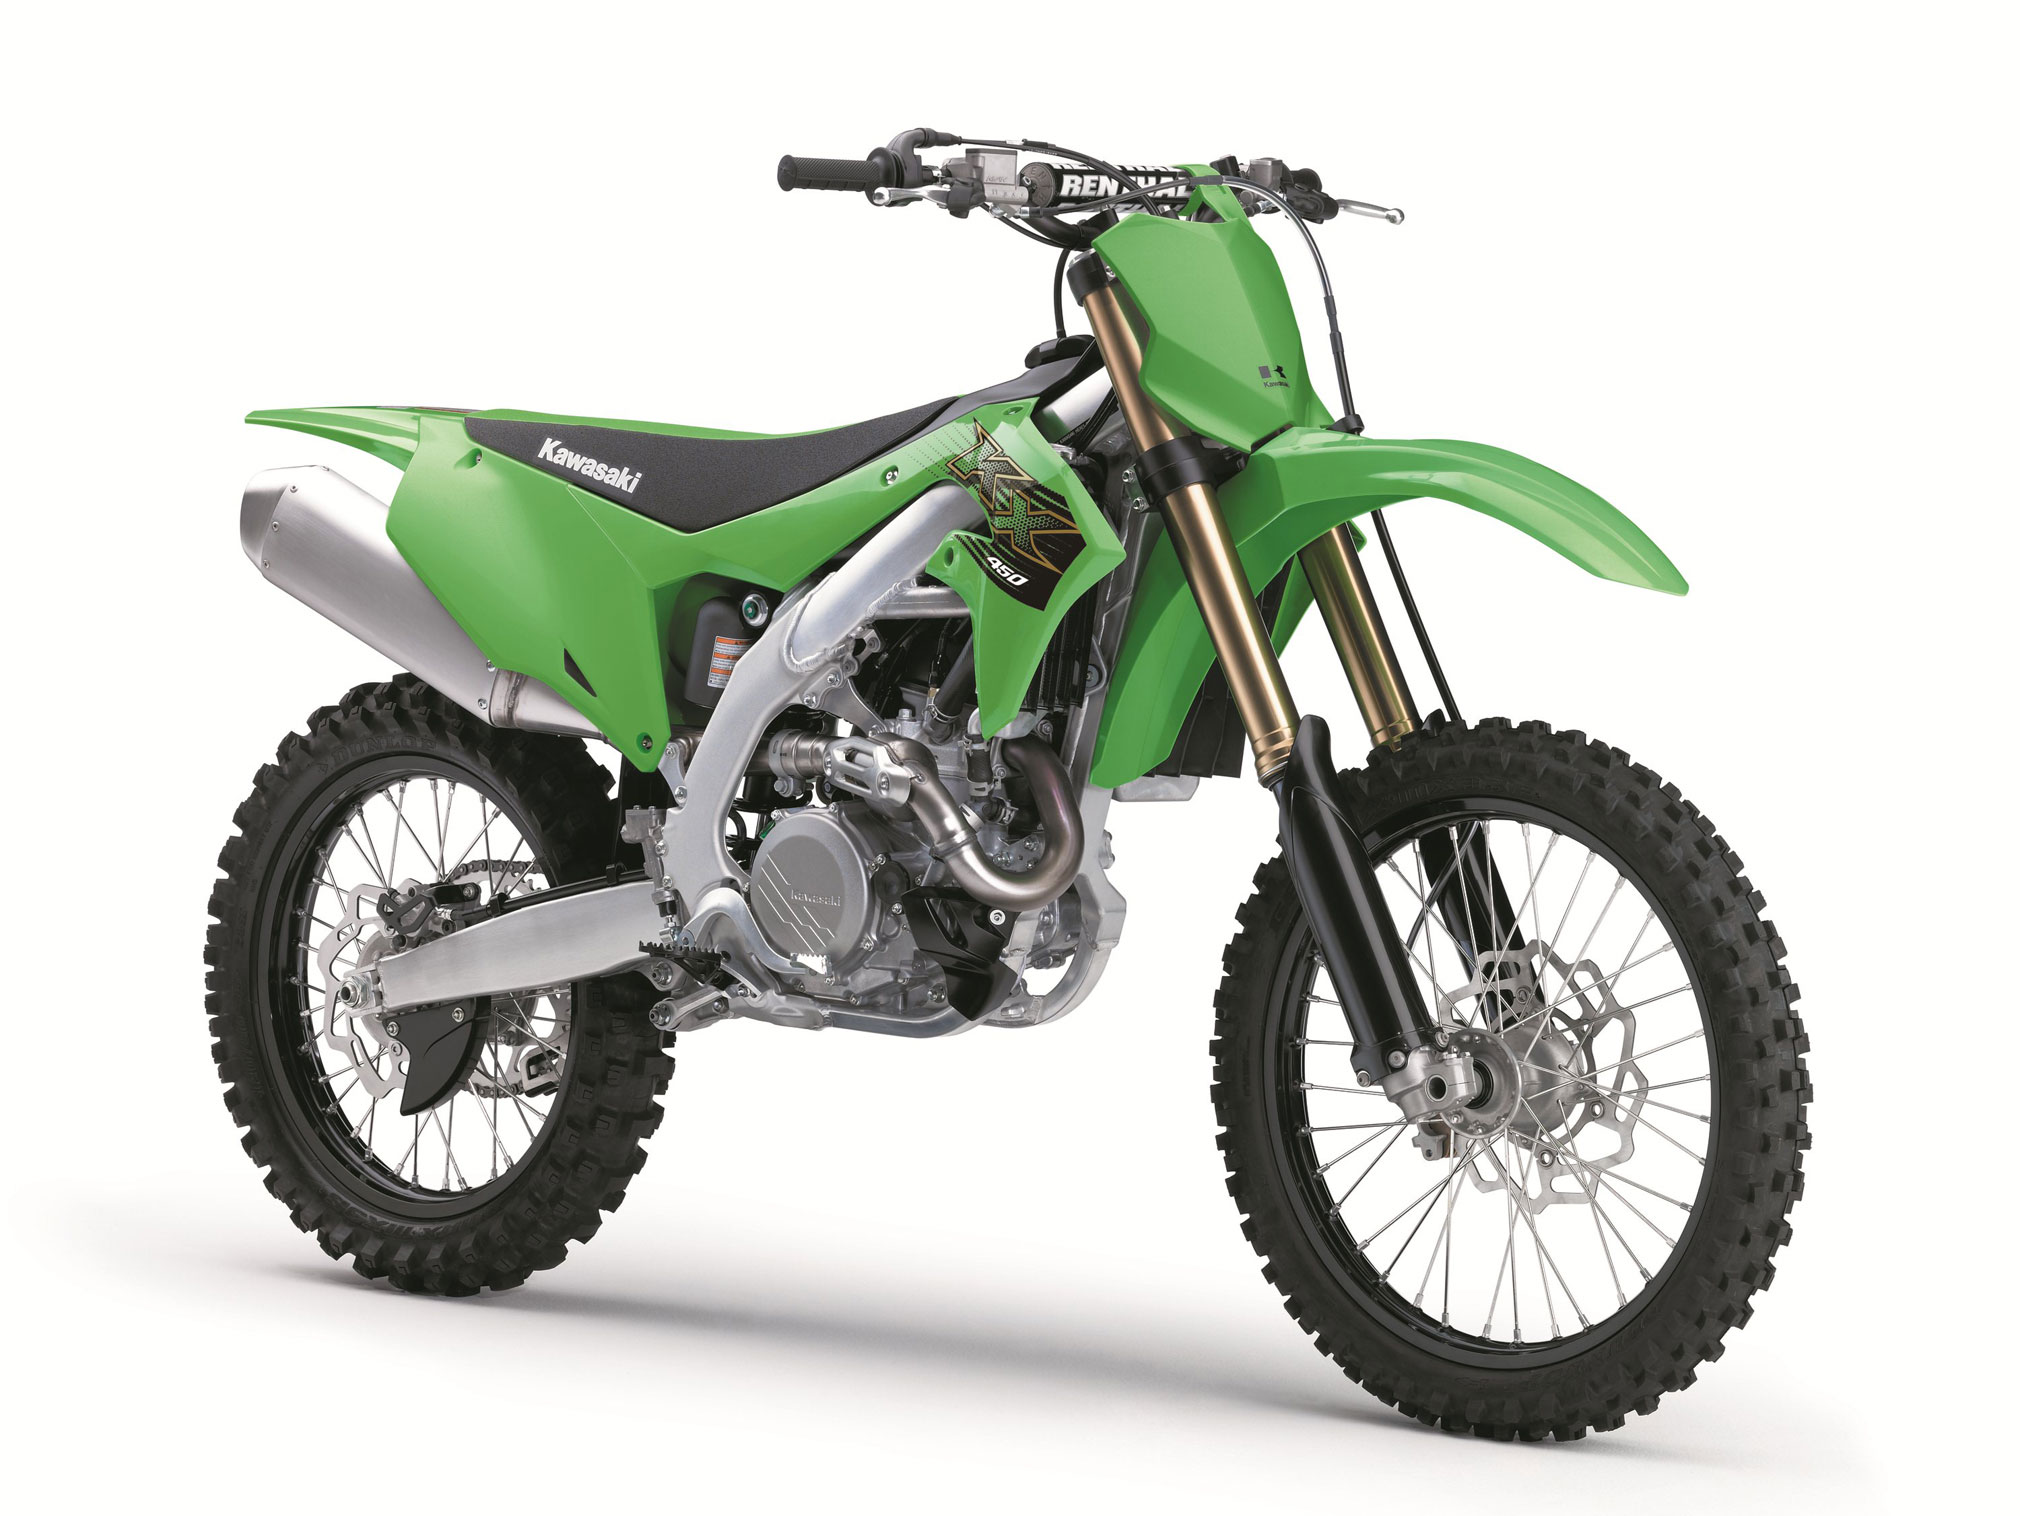 2022 Kawasaki KX450 Guide  Total Motorcycle